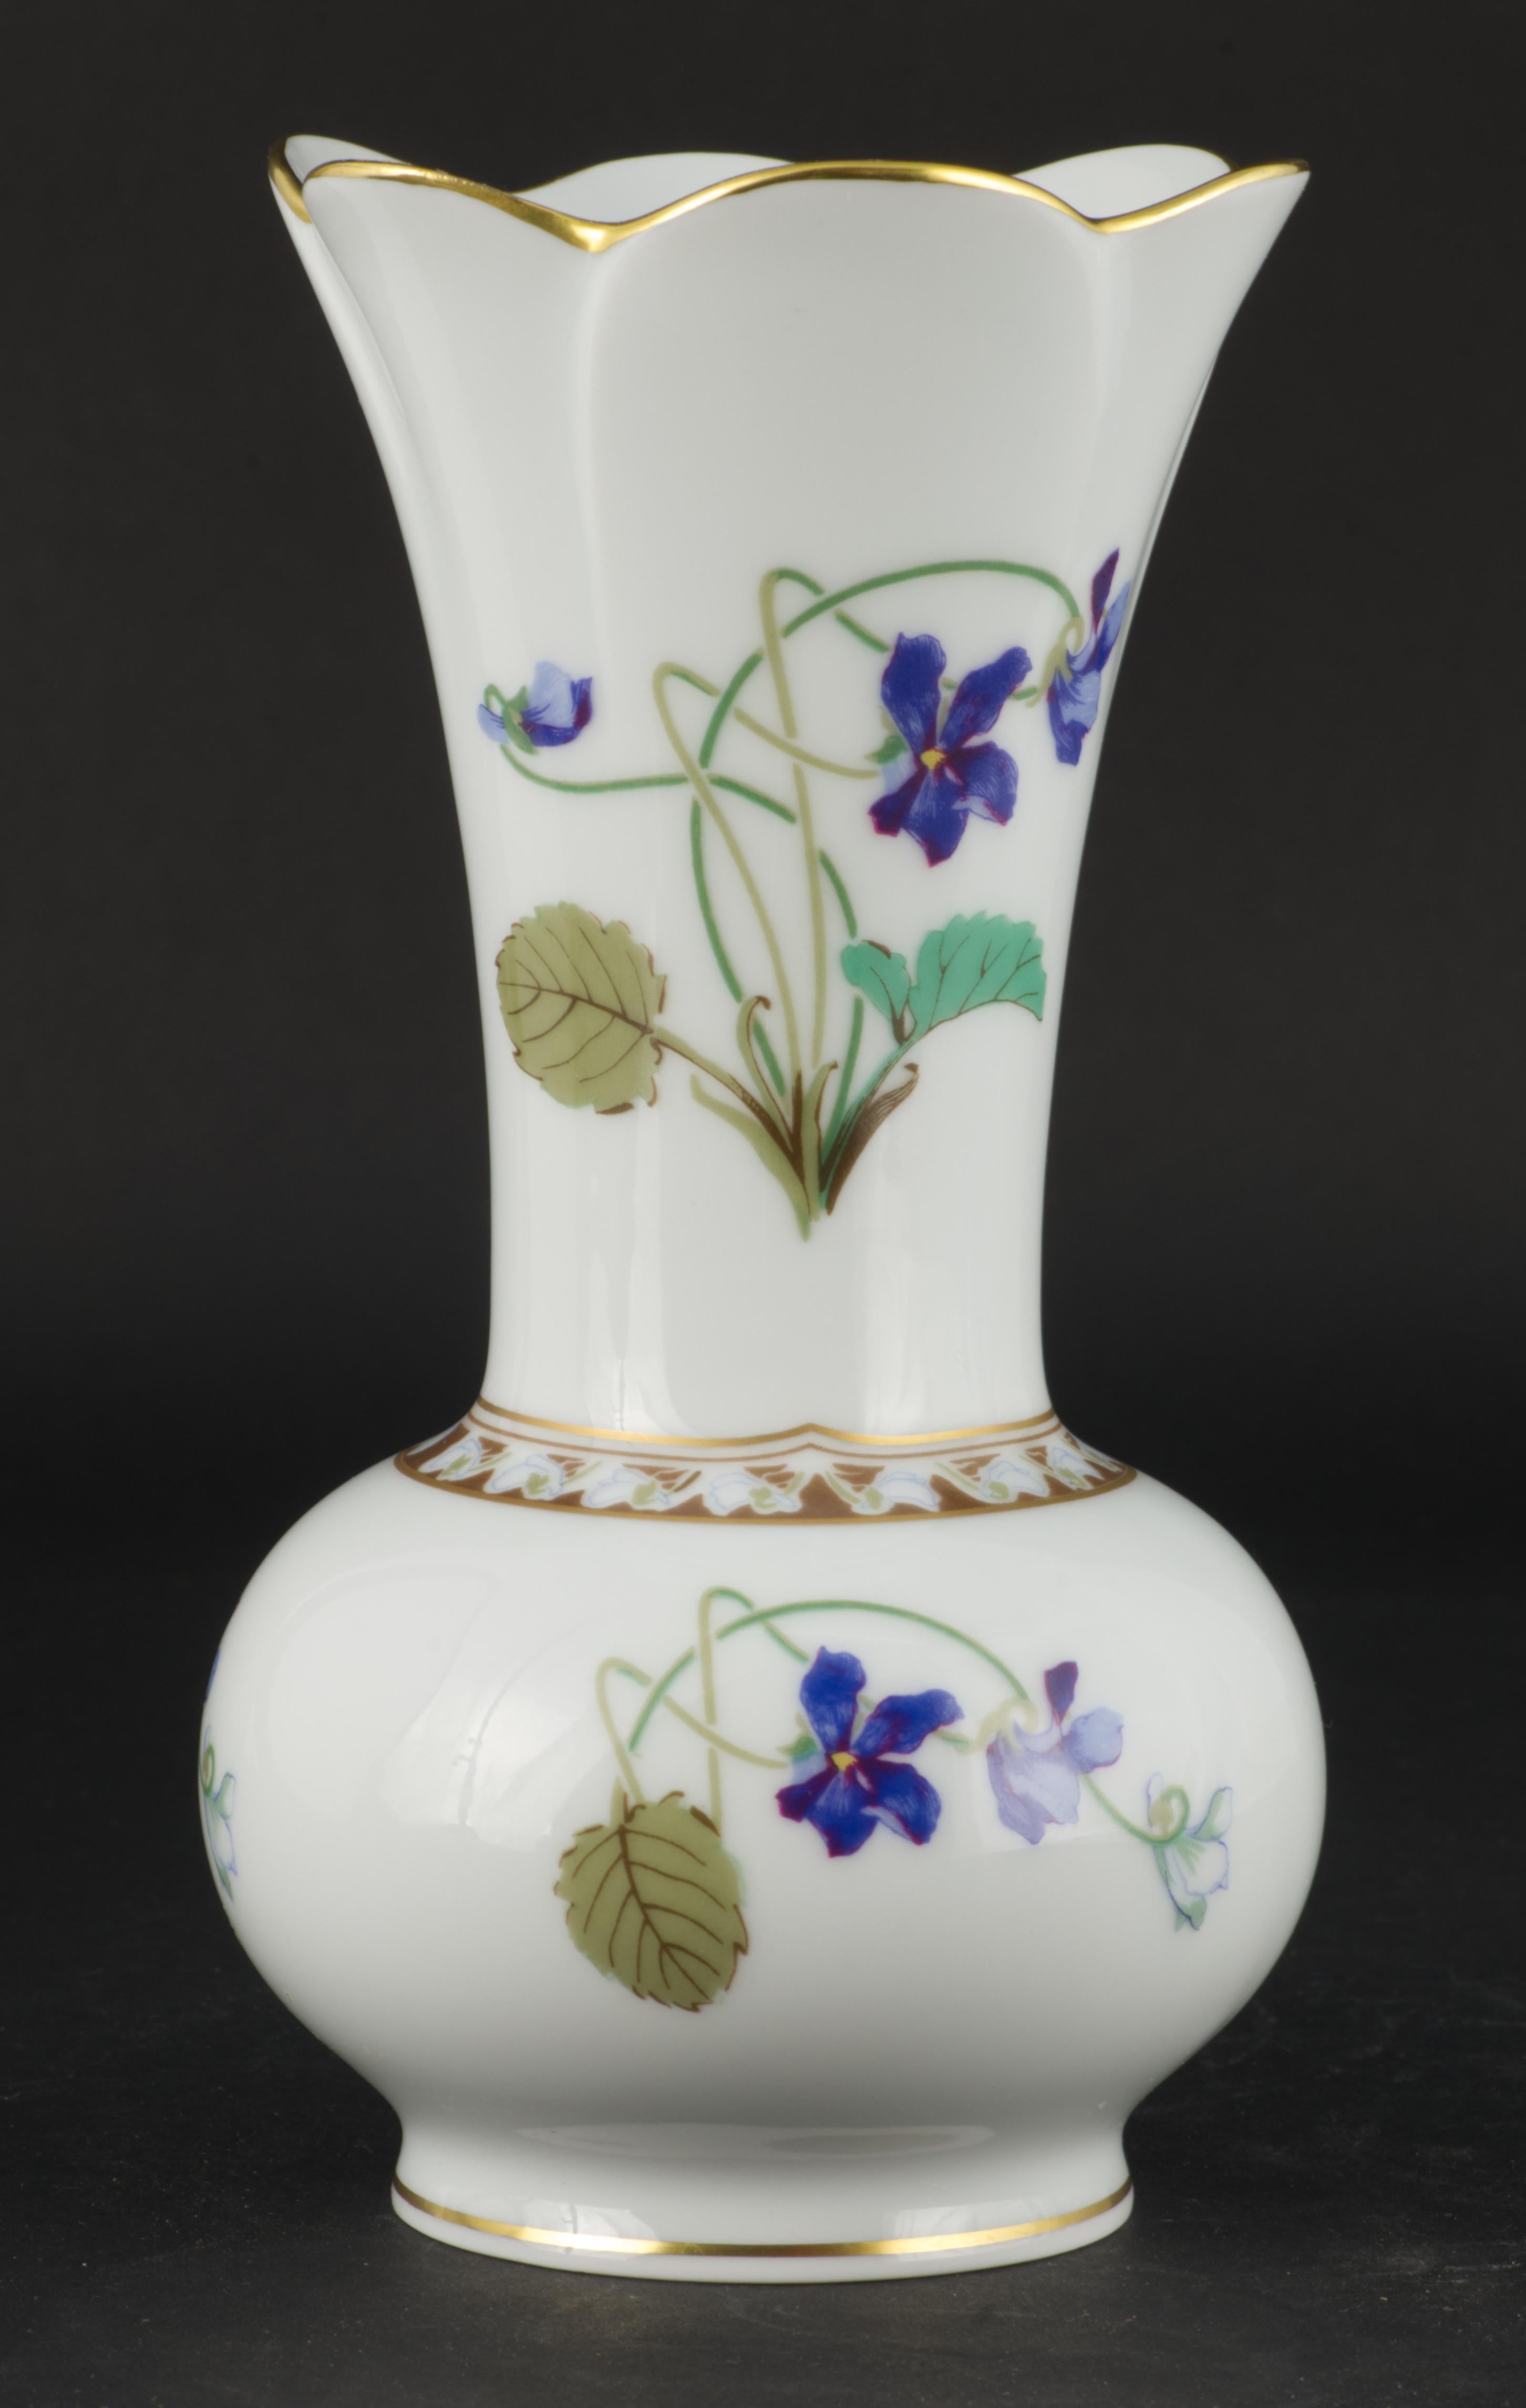 
Die Haviland Vase Limoges France mit dem Muster Imperatrice Eugenie wurde auf einem der auslaufenden Rohlinge hergestellt und ist wahrscheinlich eine der ersten Vasen mit diesem ikonischen Muster. 

Ursprünglich wurde das Muster 1901 von Theodore